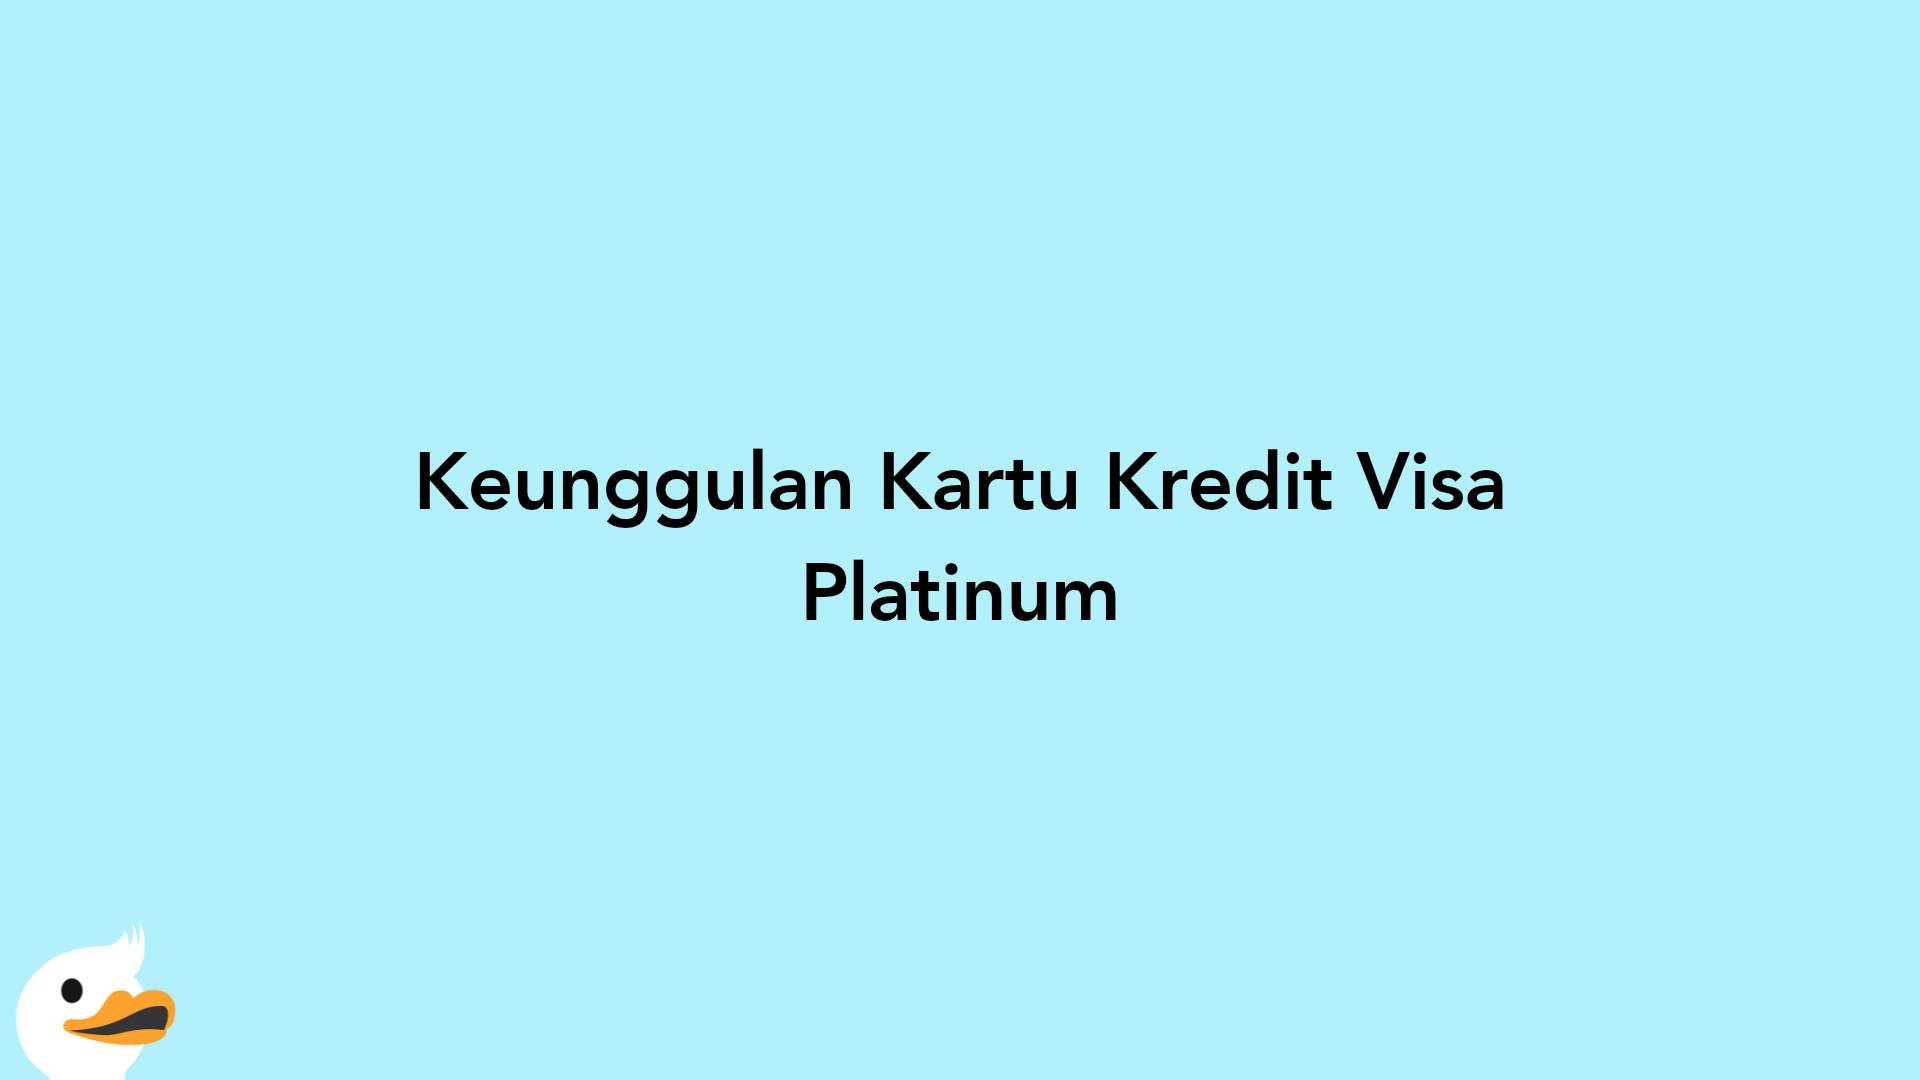 Keunggulan Kartu Kredit Visa Platinum